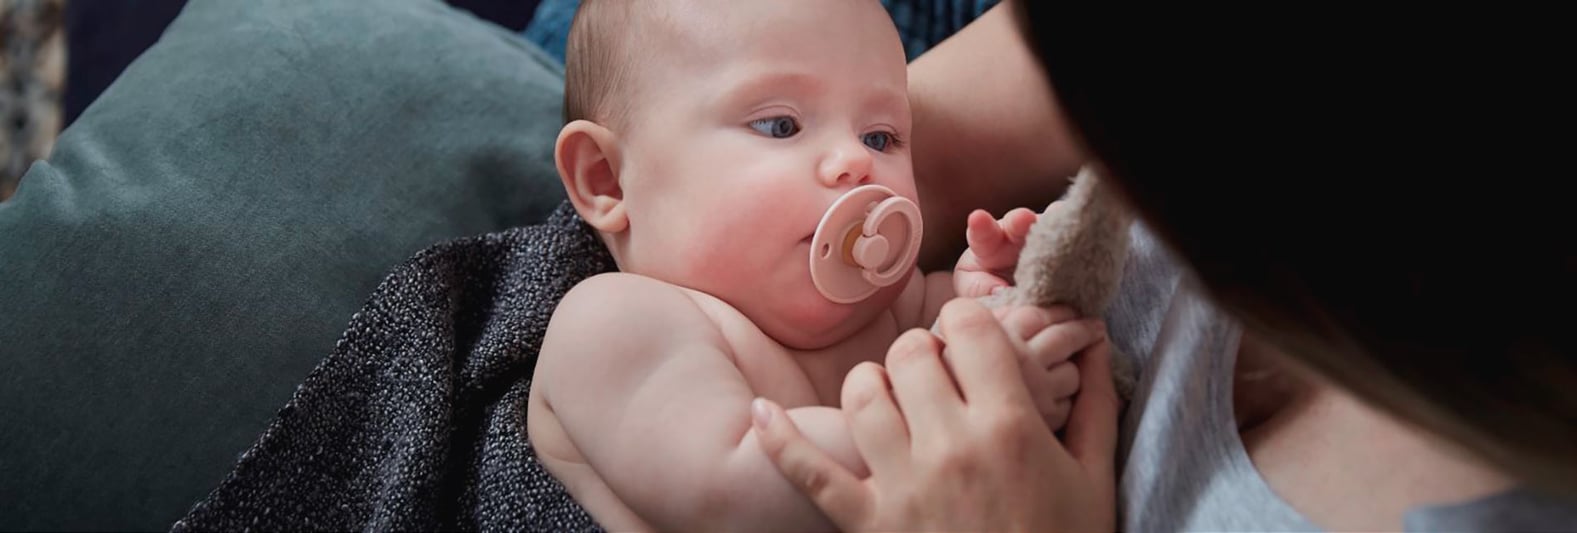 Moeder met Cryos-baby na vruchtbaarheidsbehandeling met donorsperma van hoge kwaliteit